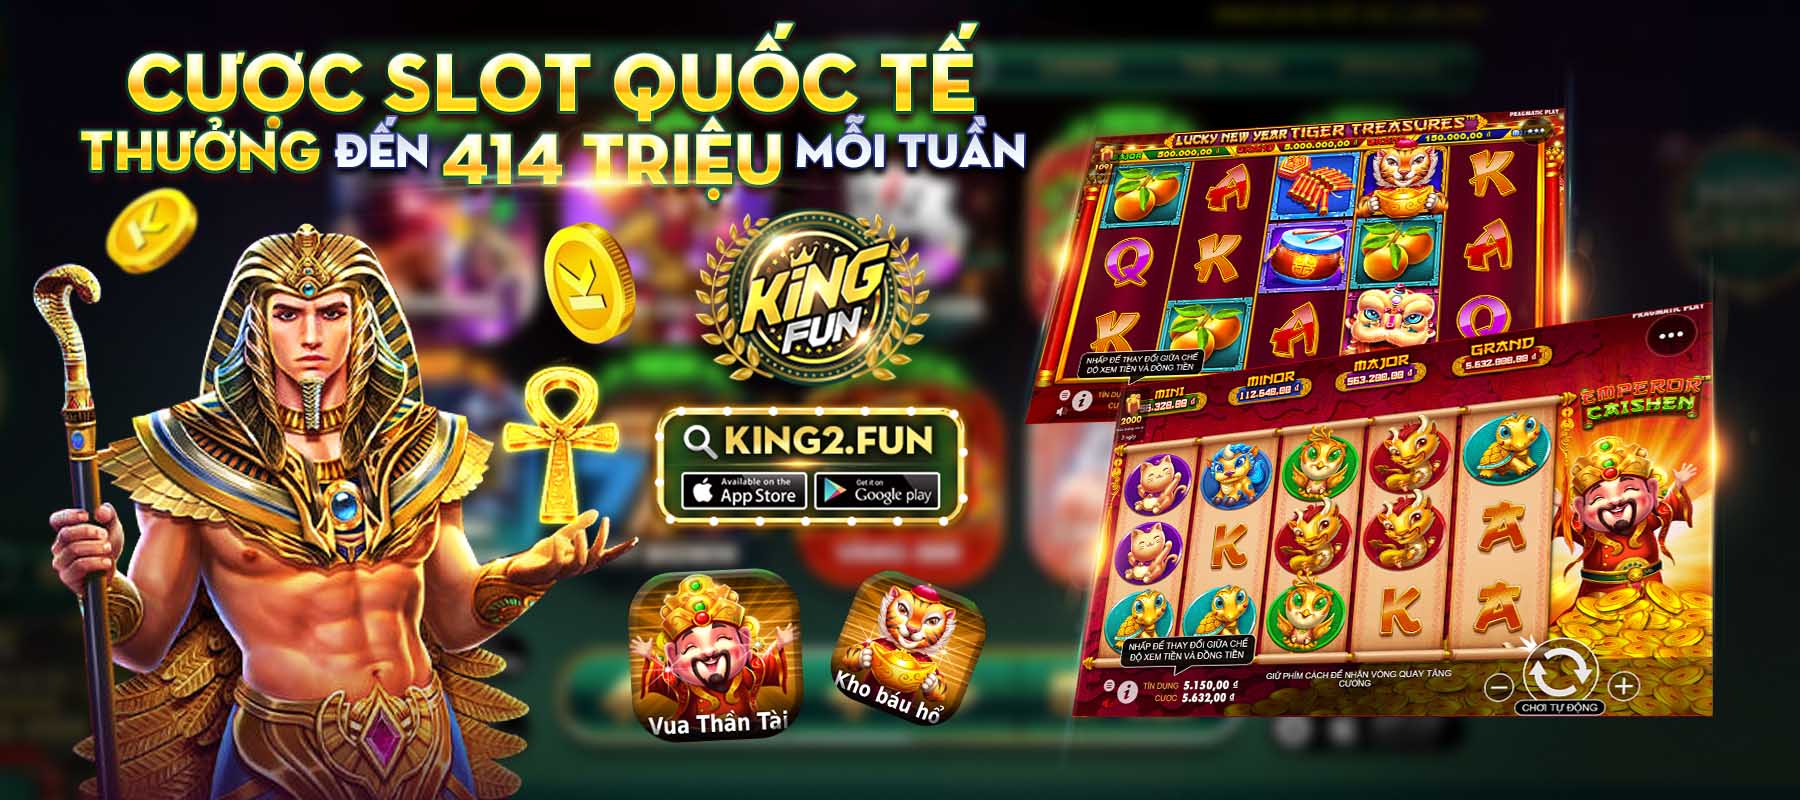 Tham gia các tựa game Slot quốc tế để nhận thưởng trong sự kiện Kingfun